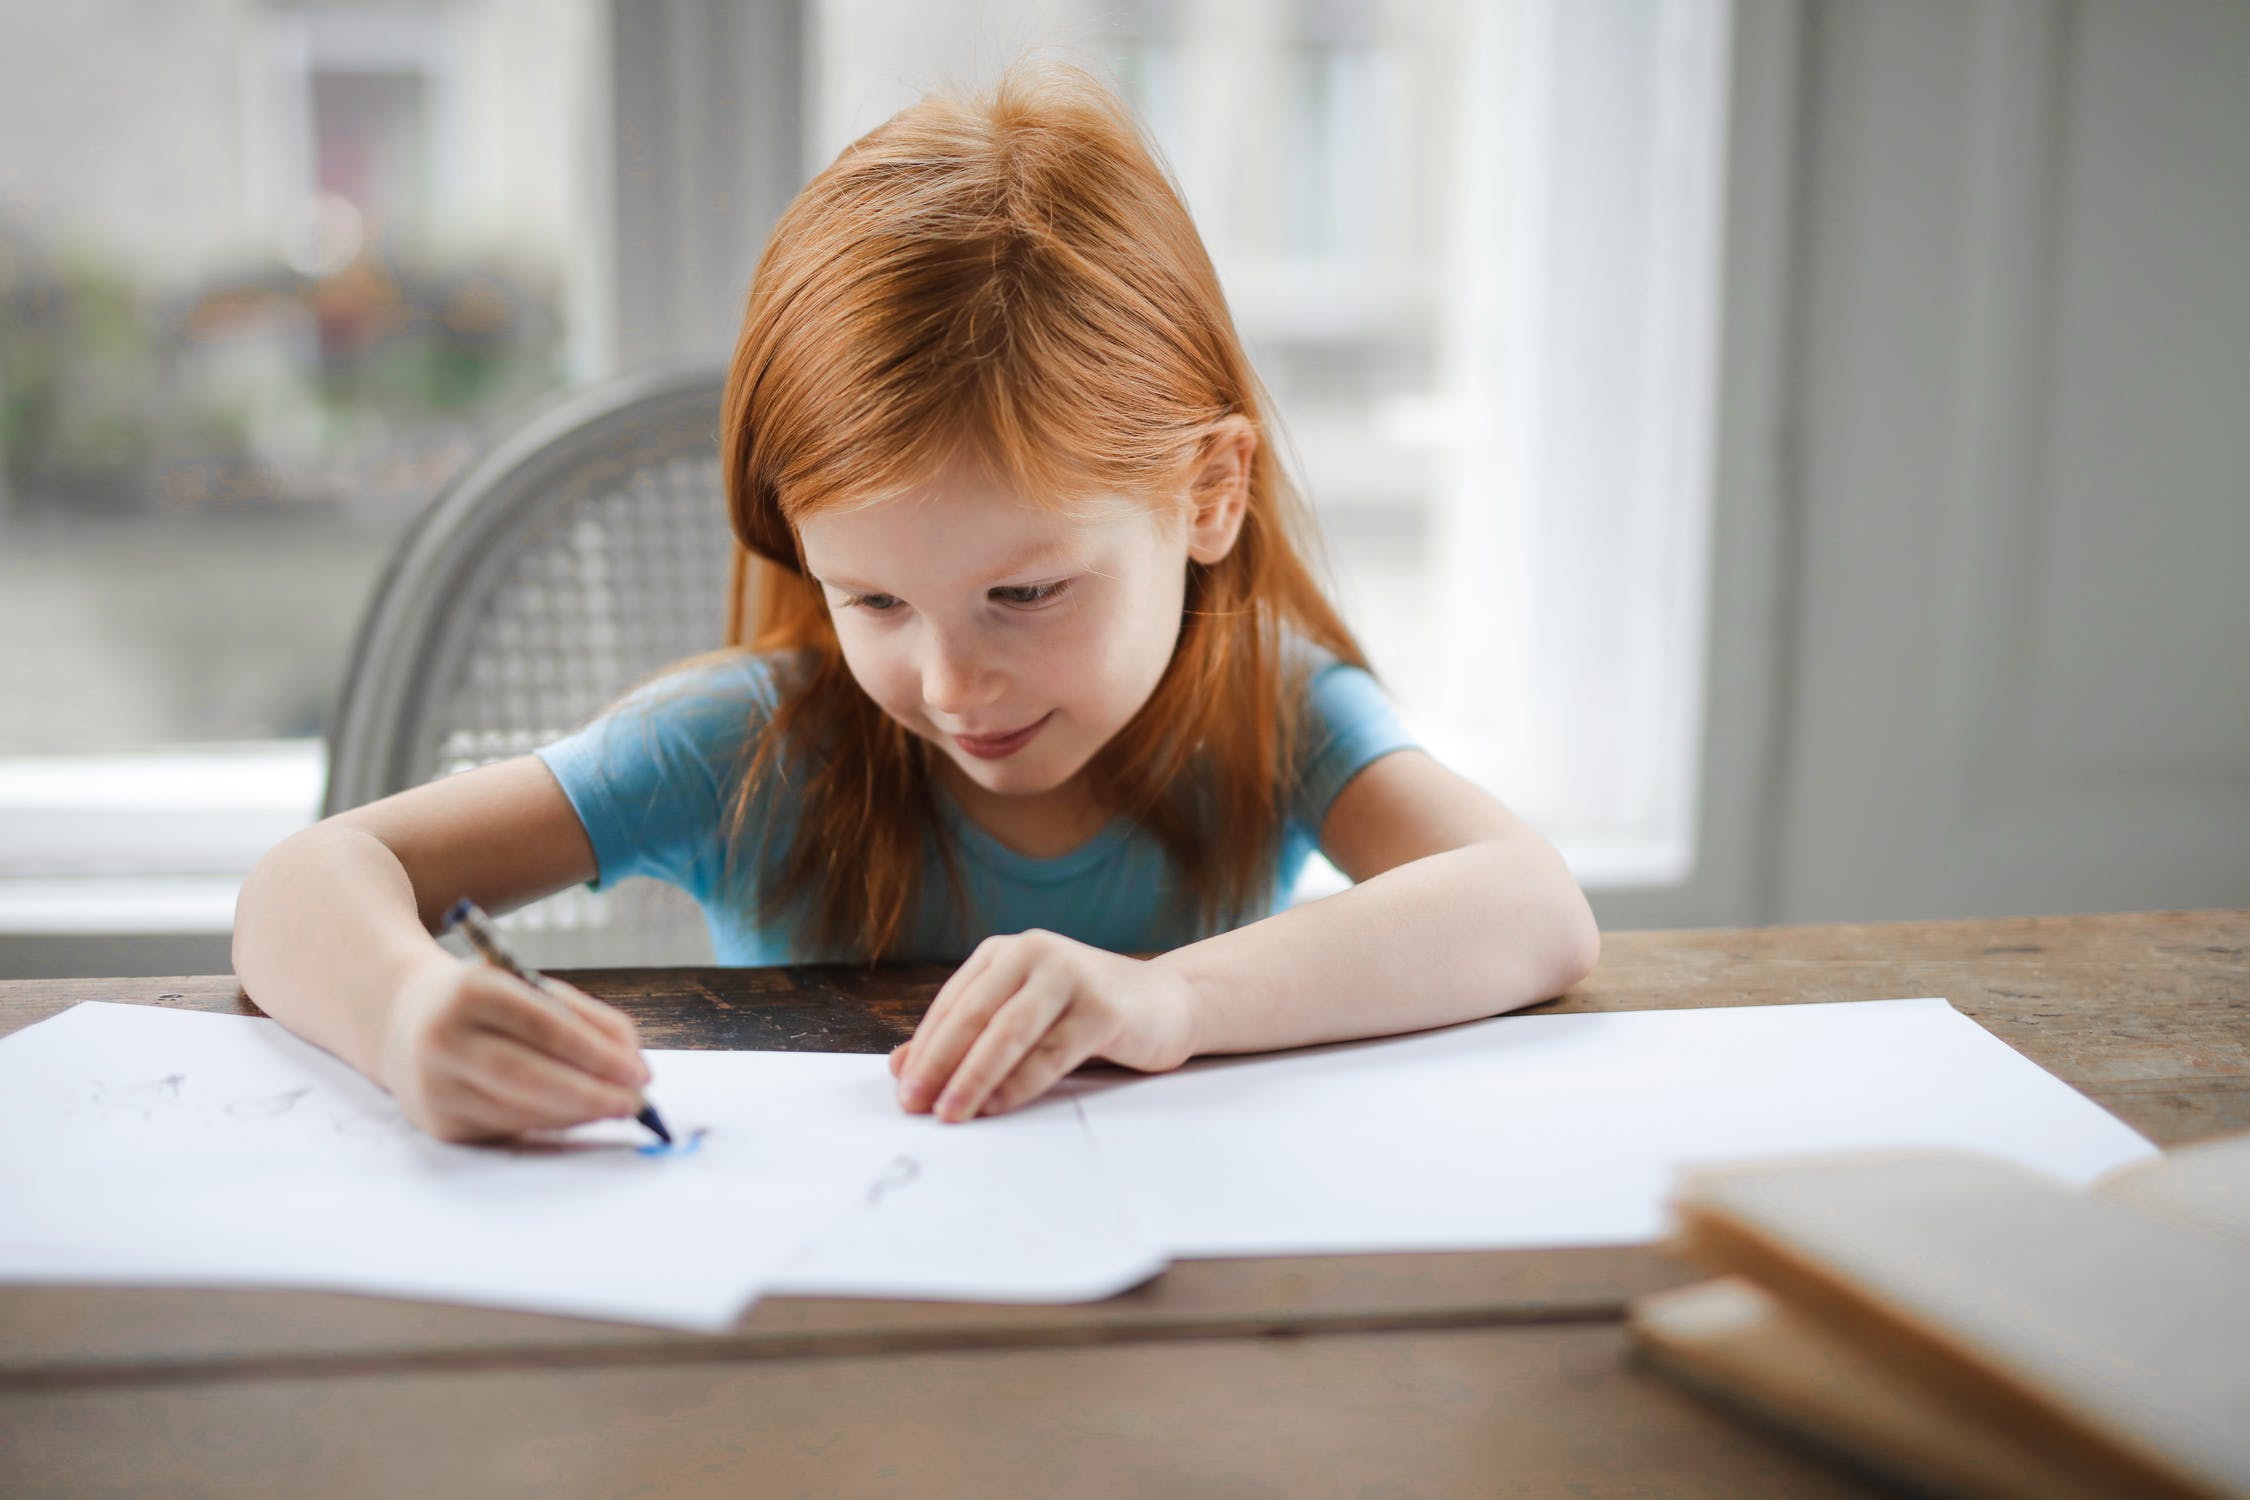 כיצד ניתן לנסות לזהות מצוקה בציורי ילדכם?